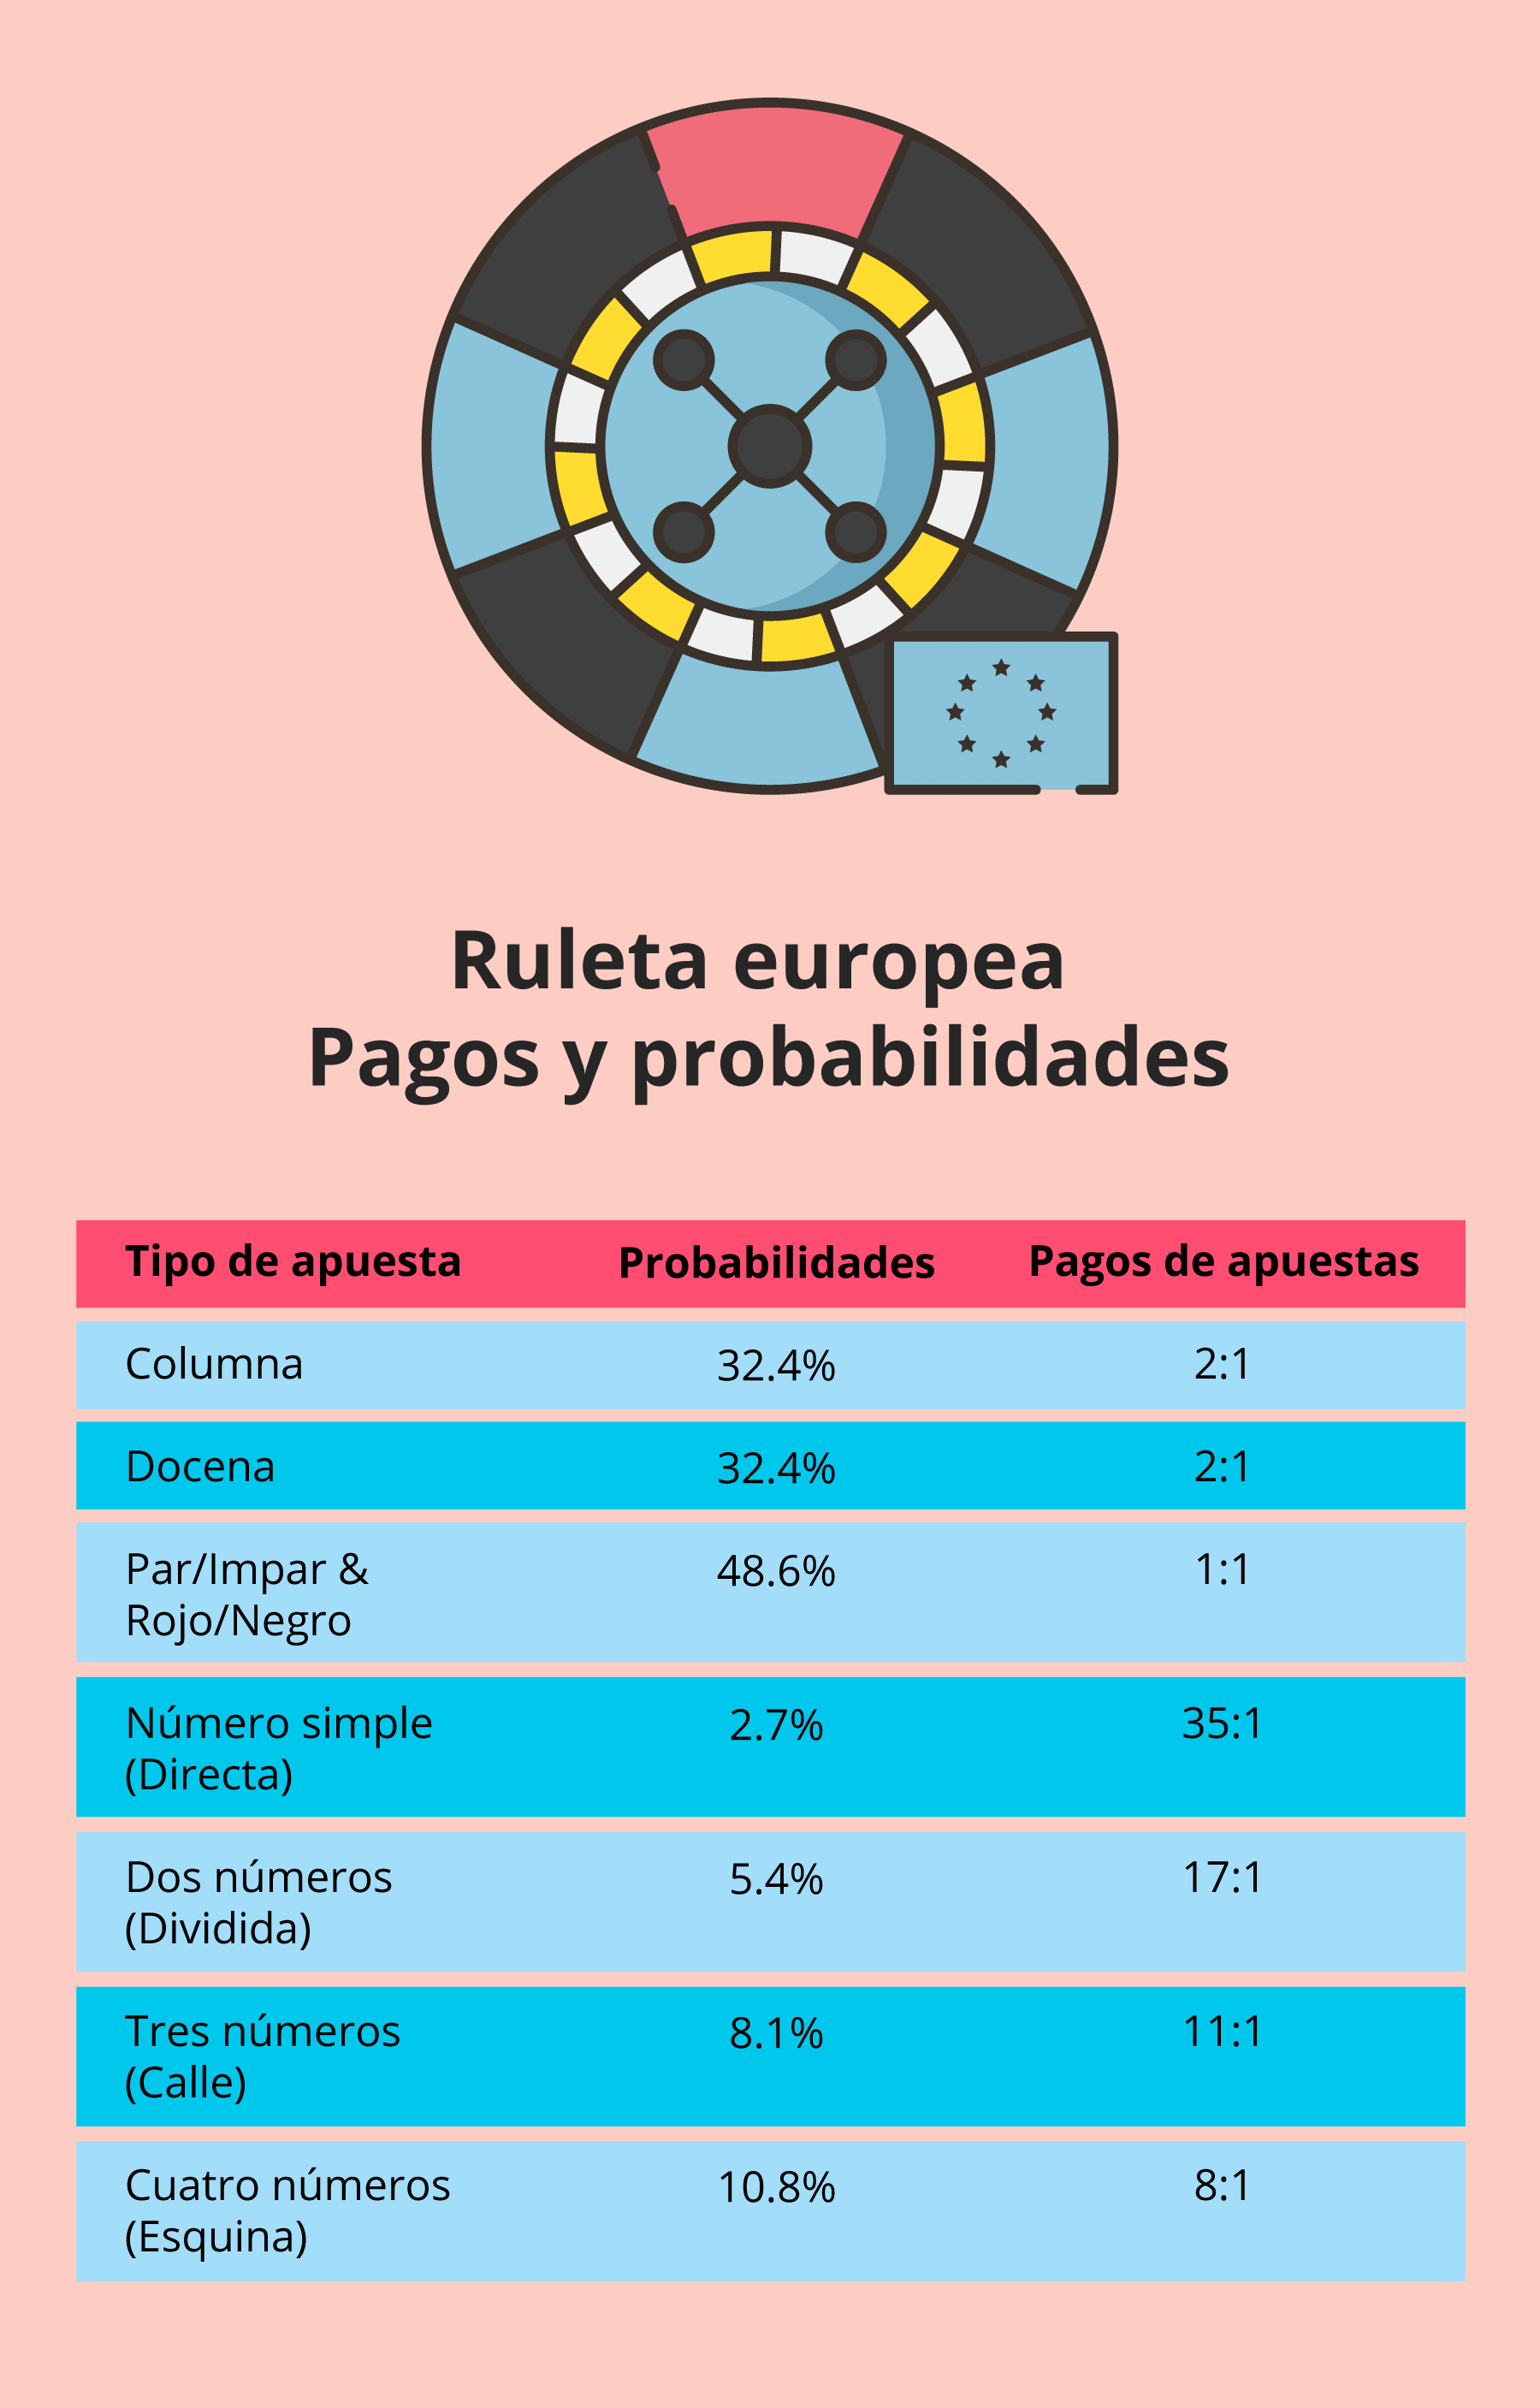 Ruleta europea pagos y probabilidades